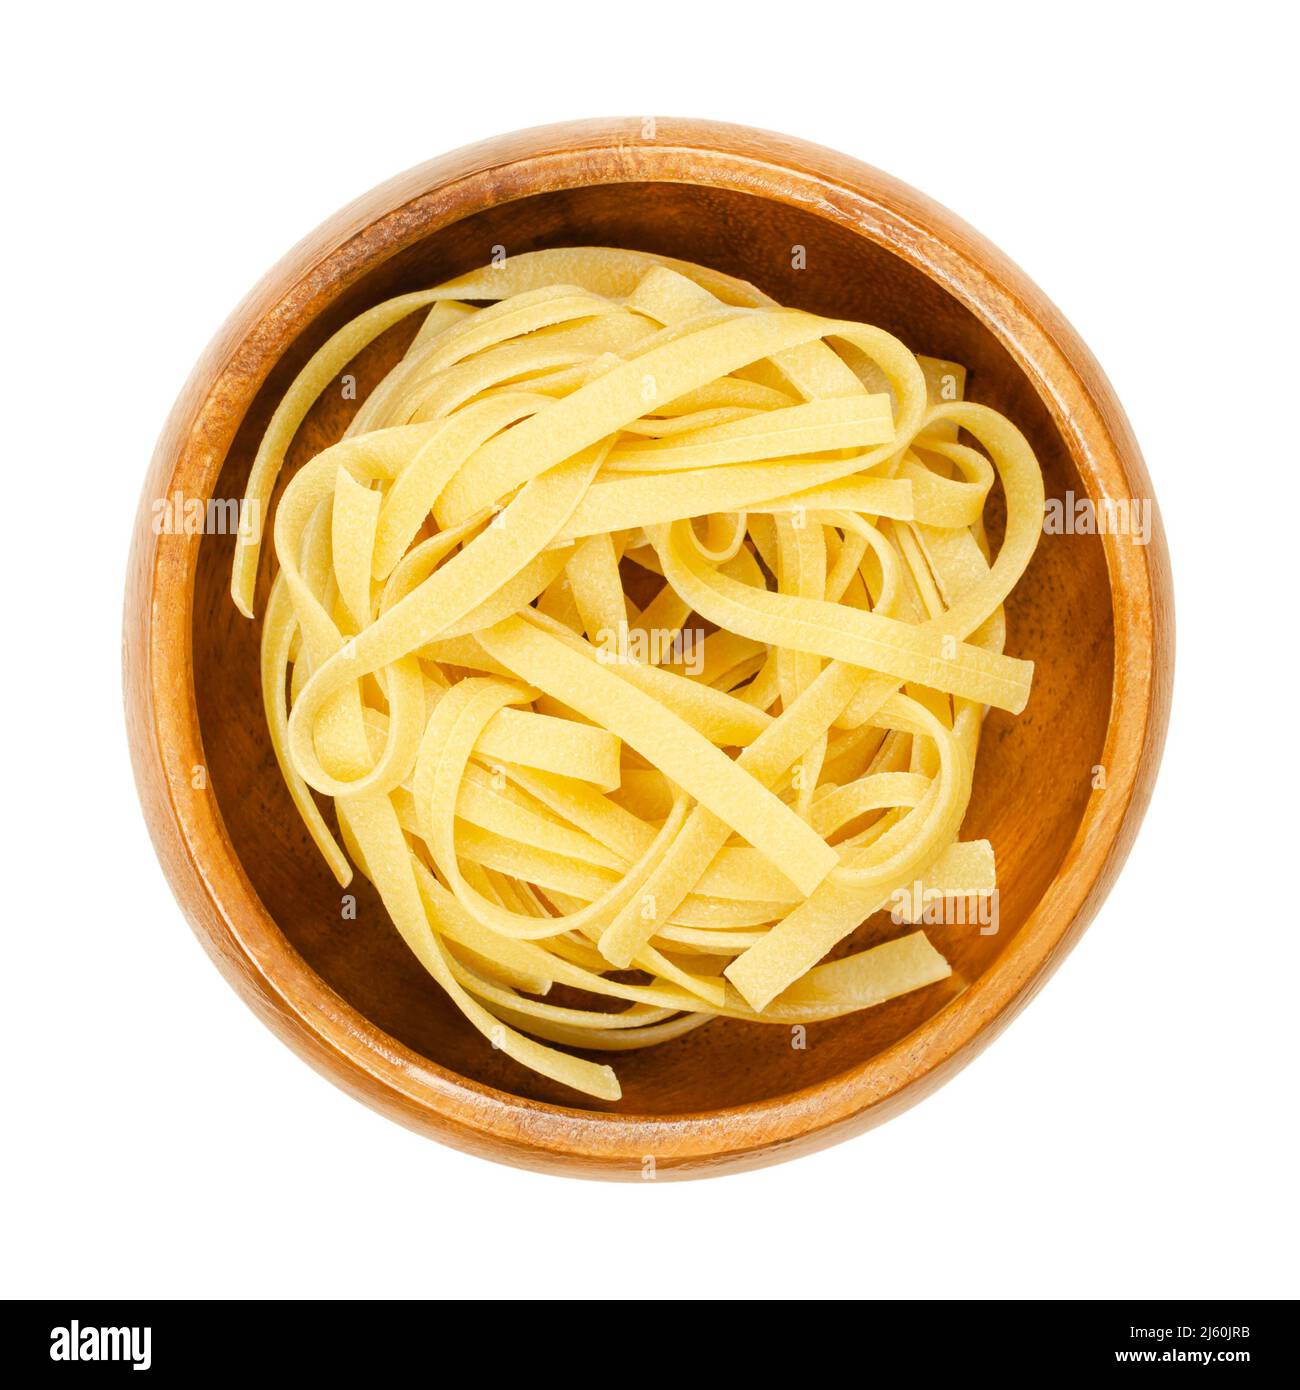 Ungekochte, getrocknete Tagliatelle-Pasta in einer Holzschüssel. Traditionelle Eiernudeln aus den Regionen Emilia-Romagna und Marken in Italien. Stockfoto